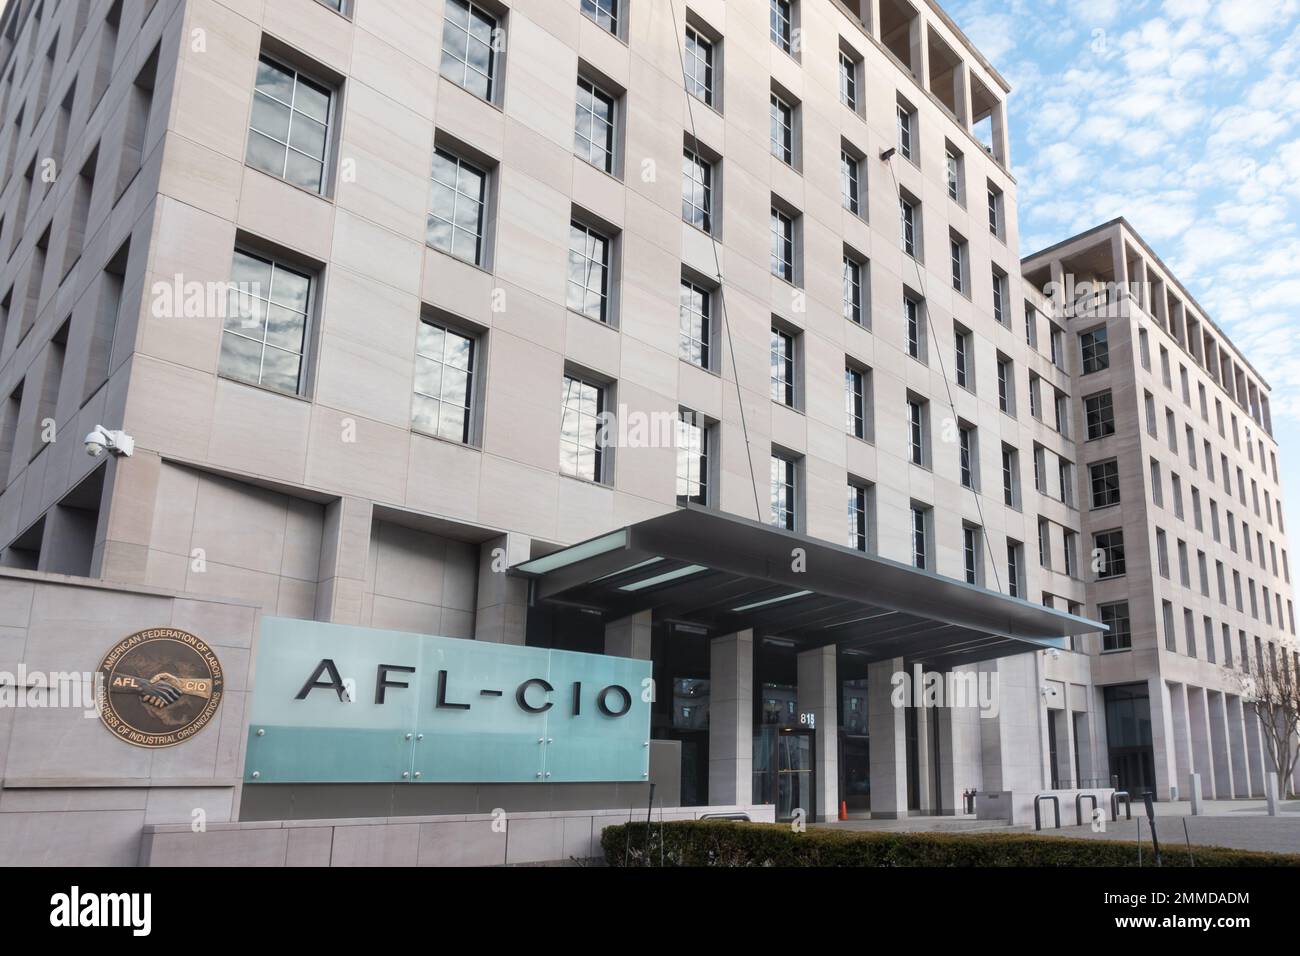 Sede dell'AFL-CIO a Washington DC, ad appena un isolato dalla Casa Bianca. La AFL-CIO è la più grande federazione dei sindacati NEGLI STATI UNITI Foto Stock